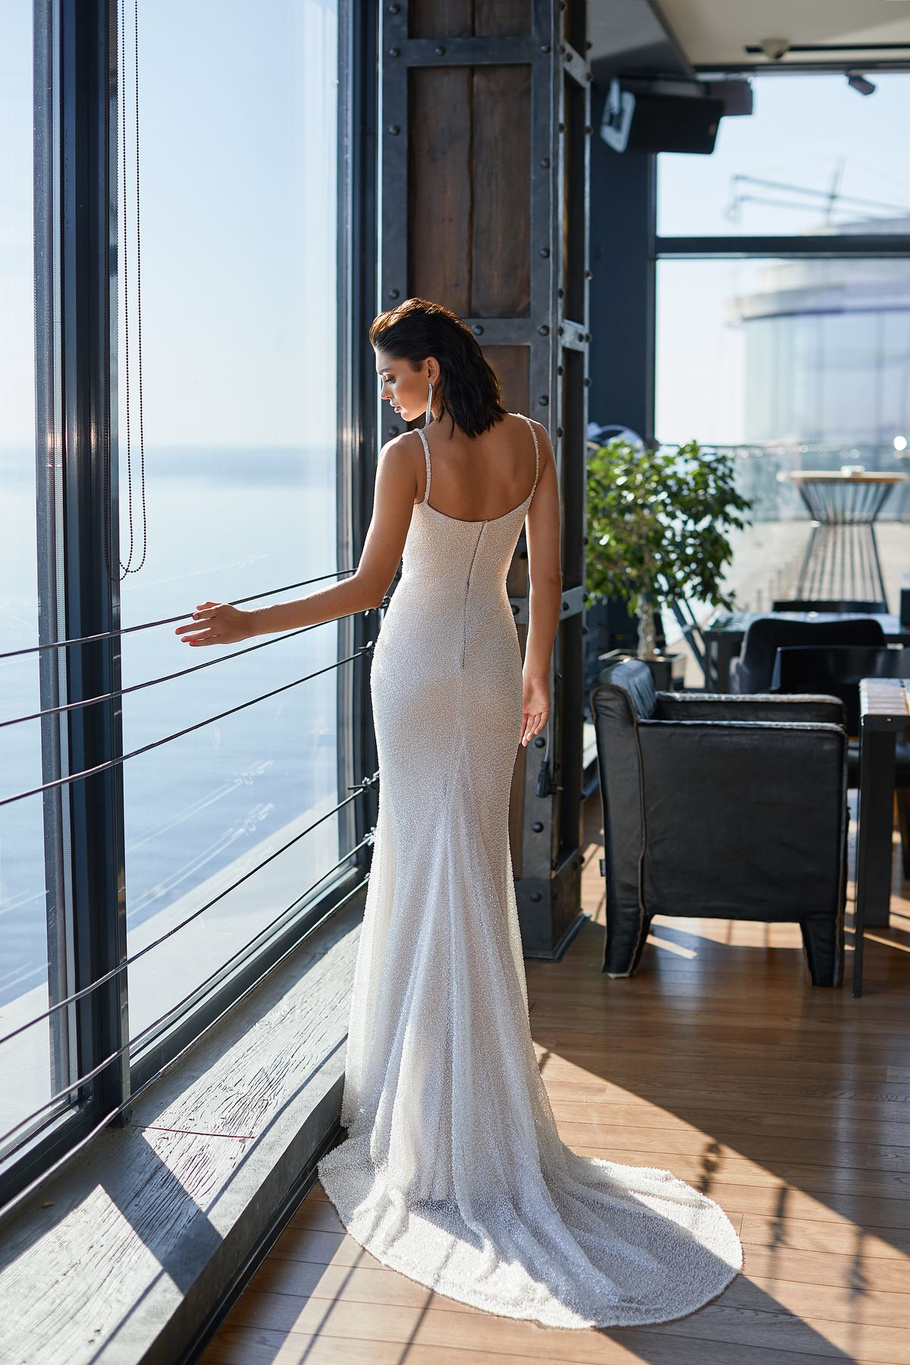 Купить свадебное платье «Зе Конкерор» Ида Торез из коллекции 2021 года в салоне «Мэри Трюфель»